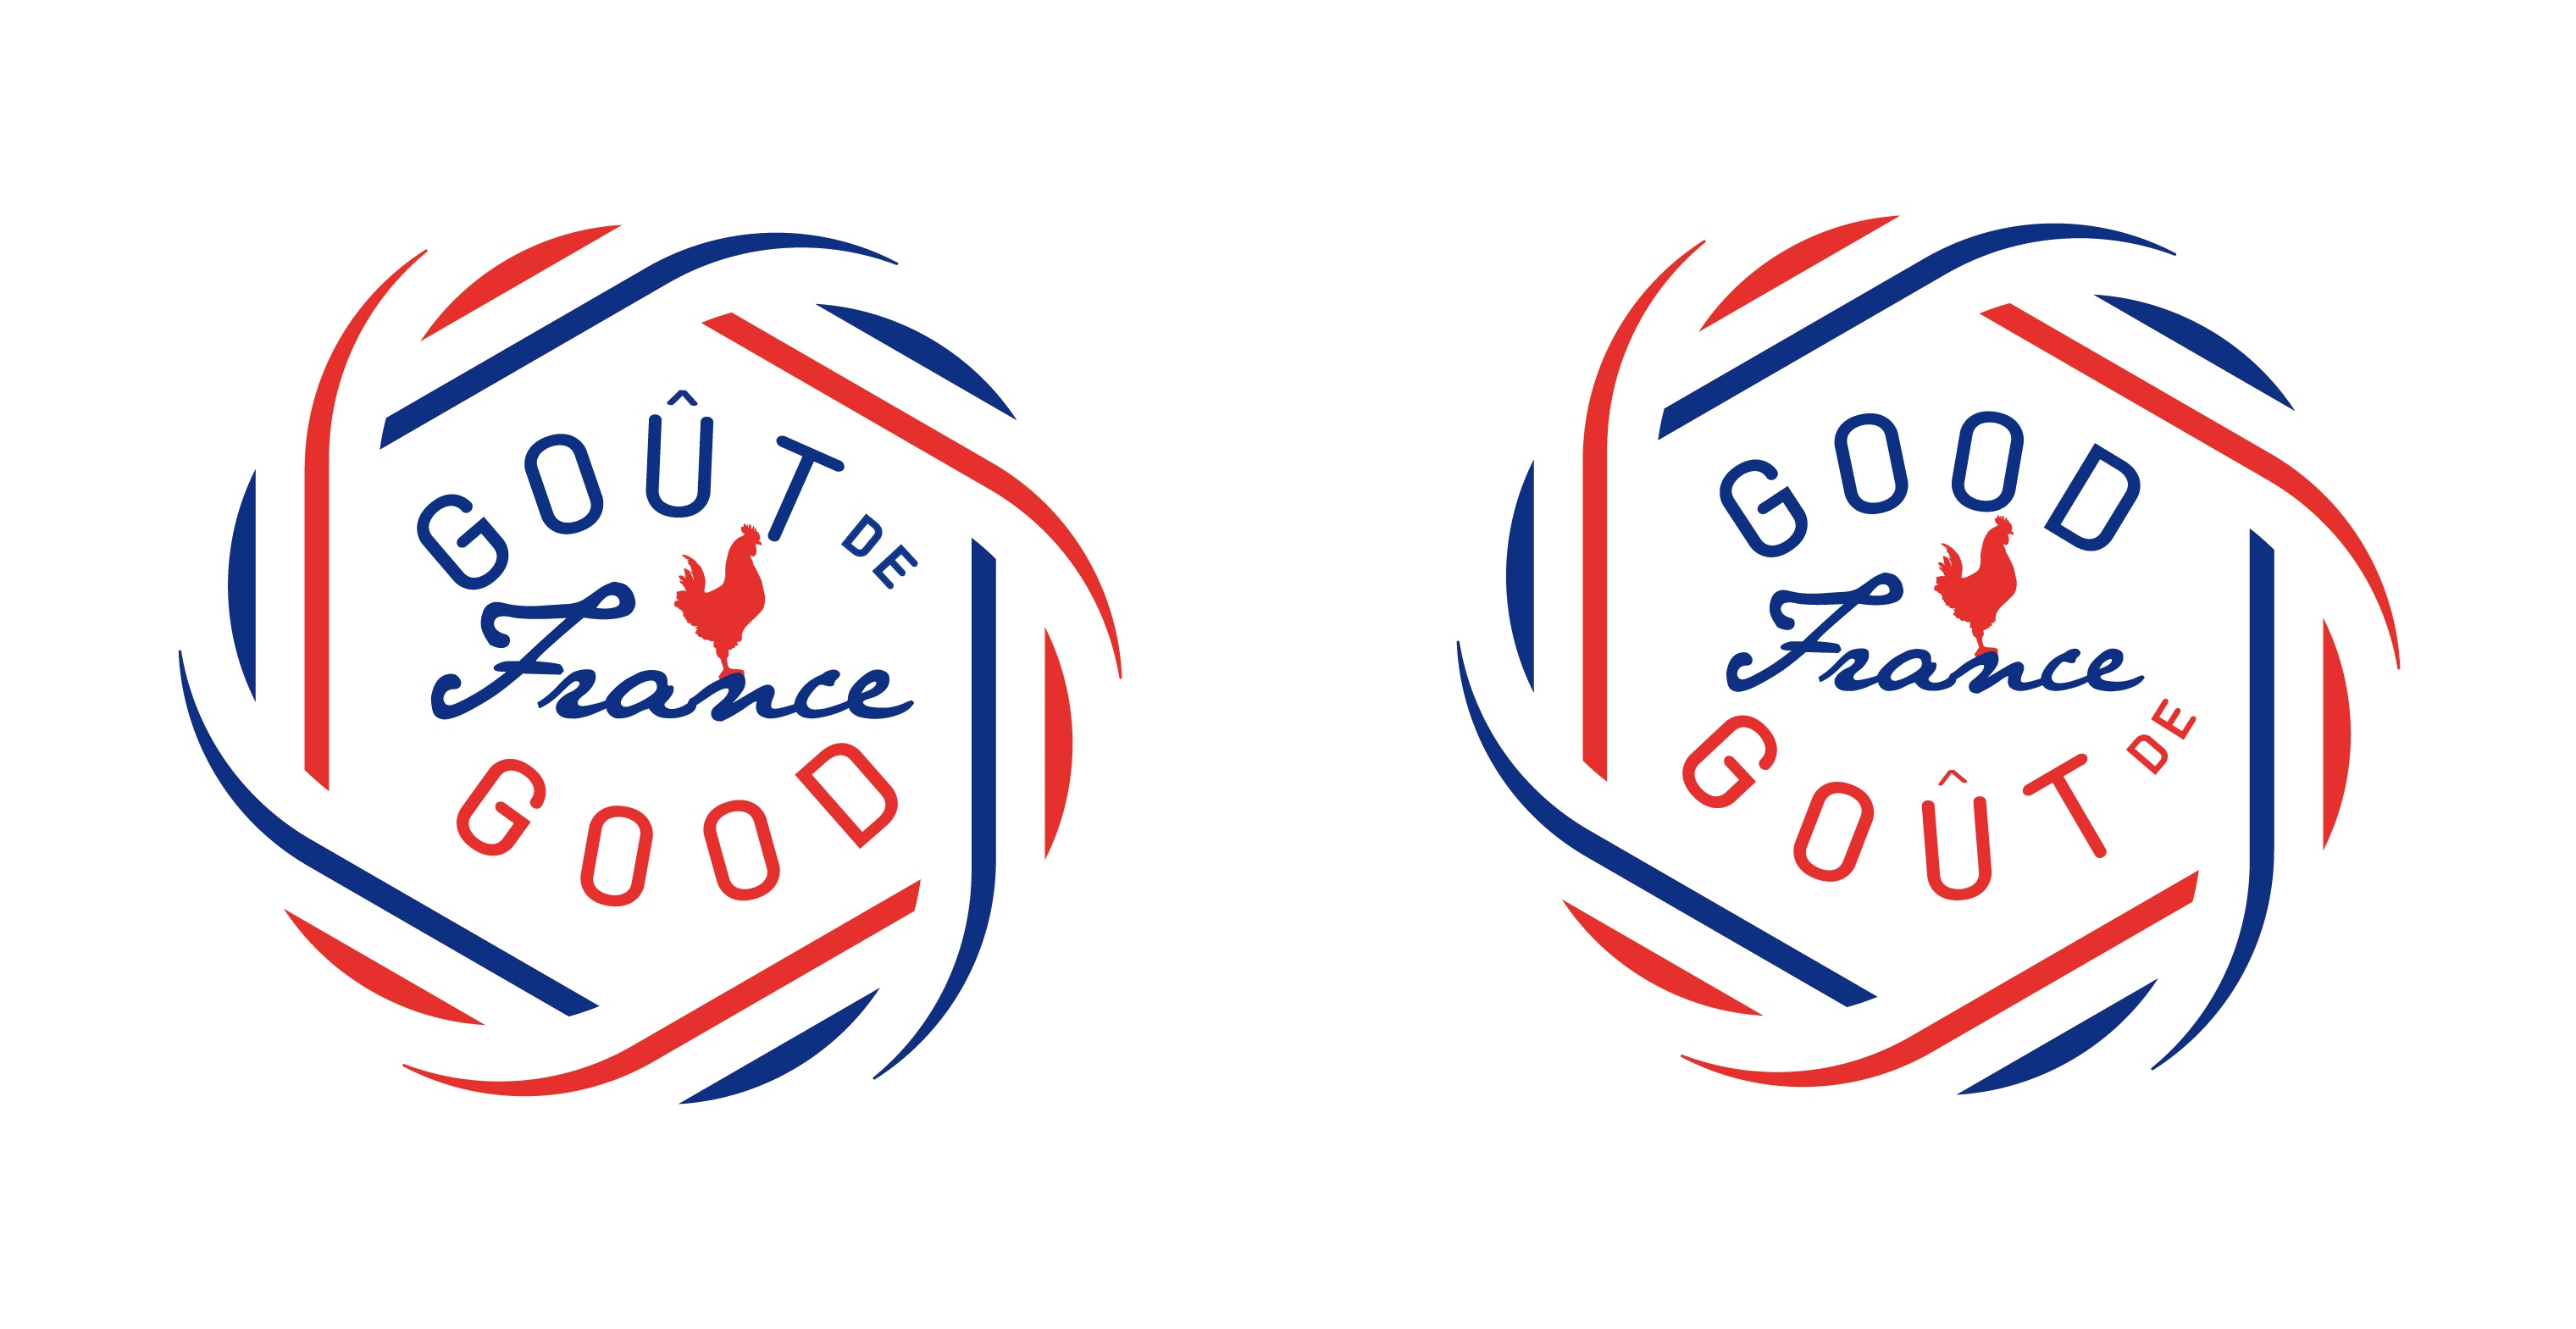 Gout de France, buổi ăn tối hoành tráng